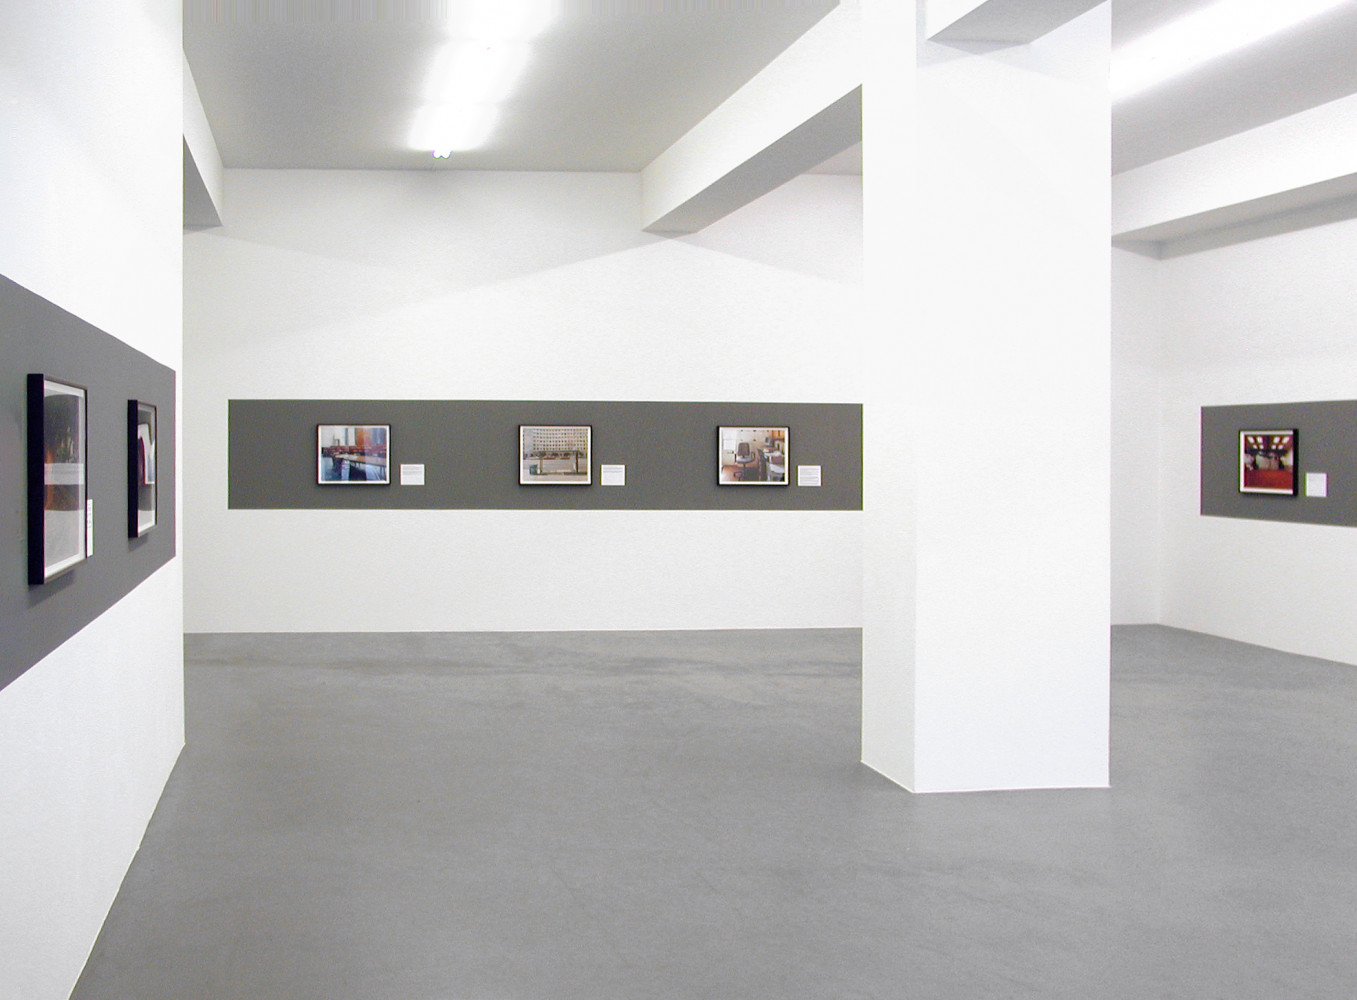 Joel Sternfeld, ‘On This Site’, Installationsansicht, Buchmann Galerie, 2009